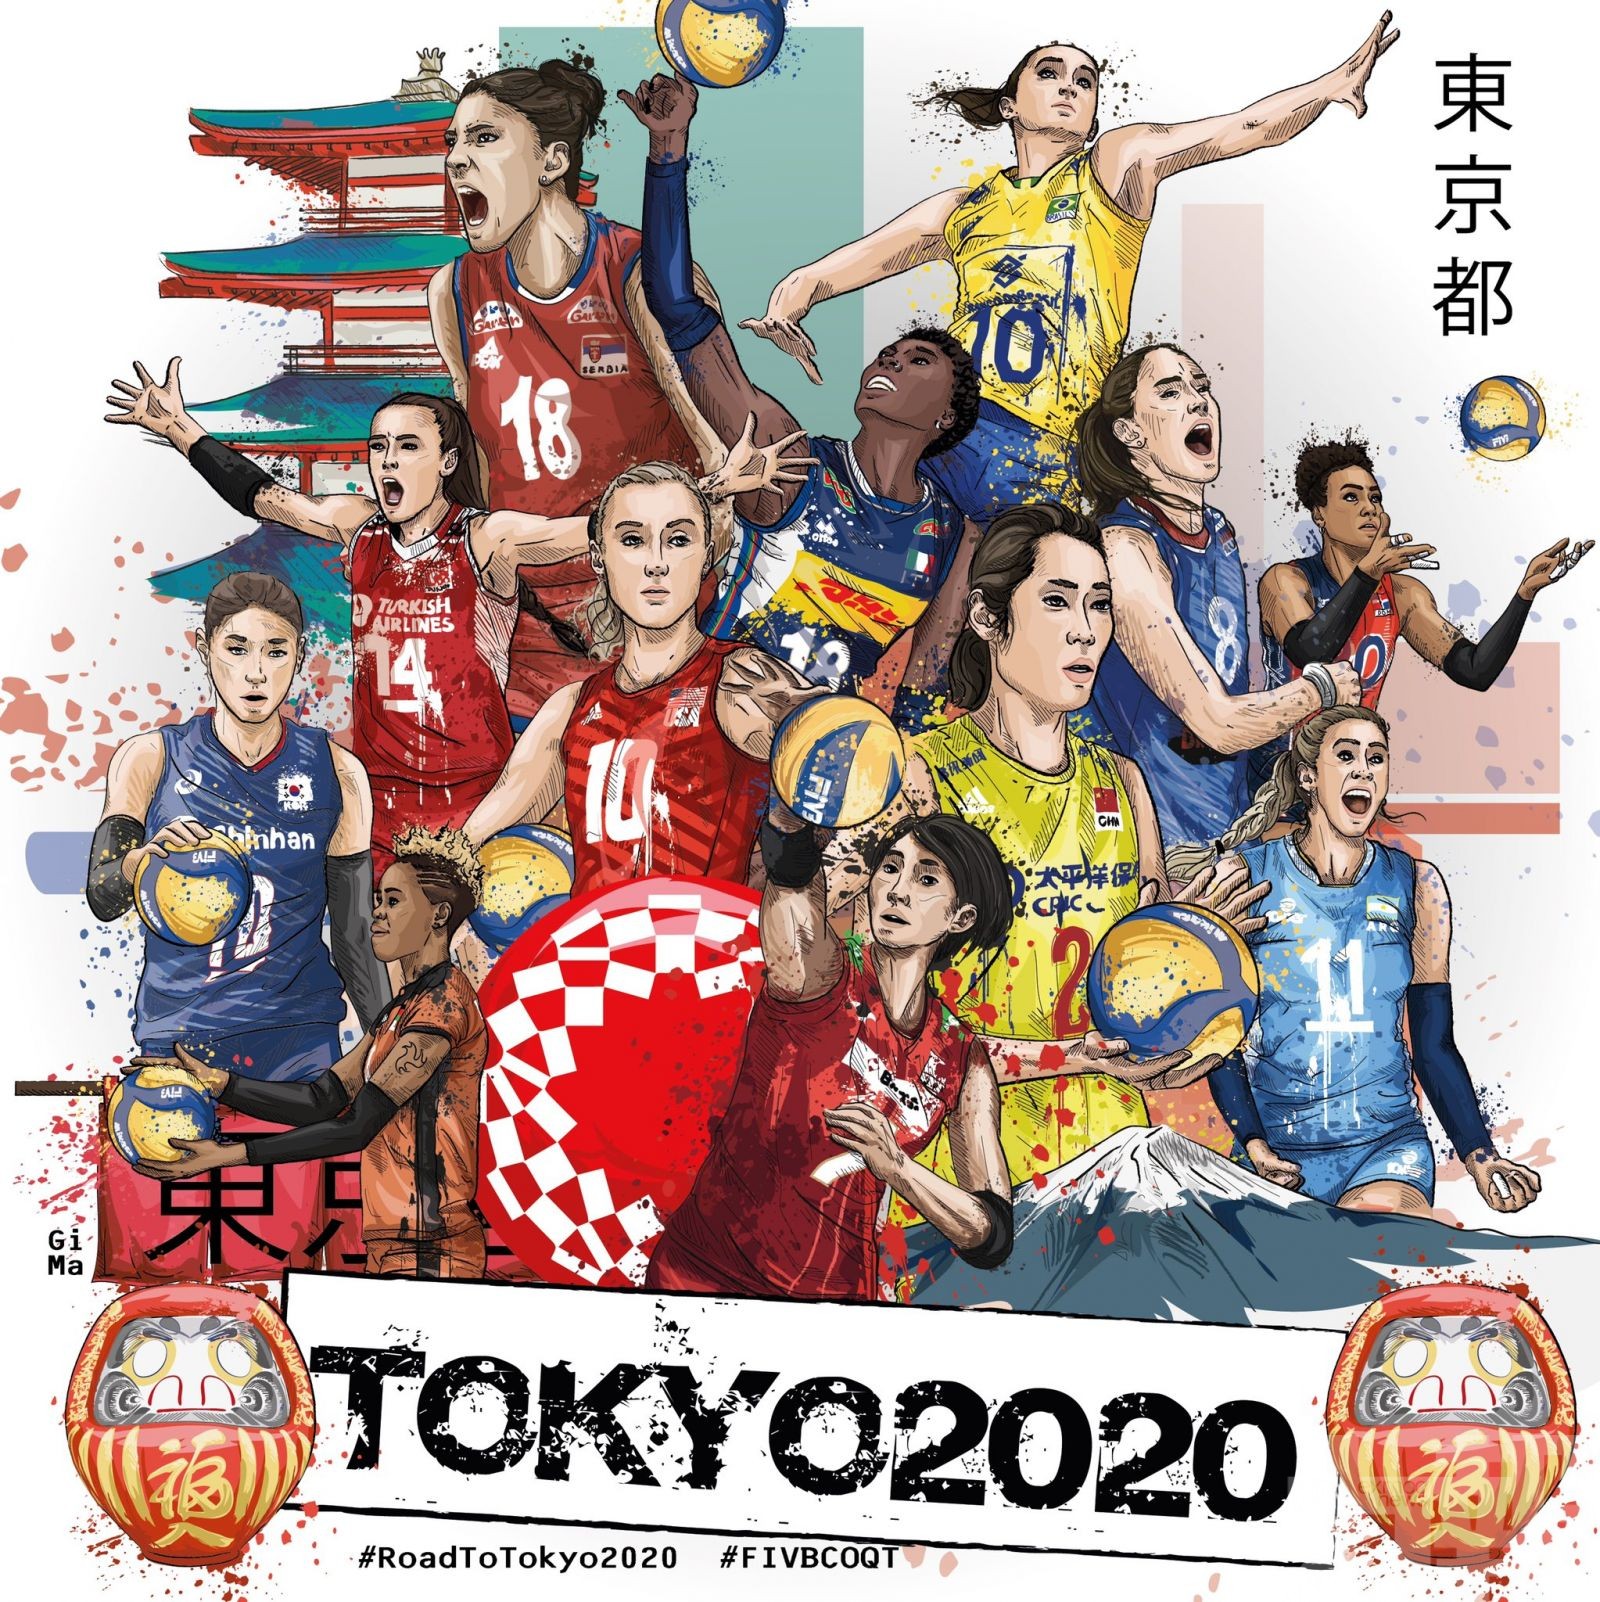 中國女排東京奧運首戰硬撼土耳其